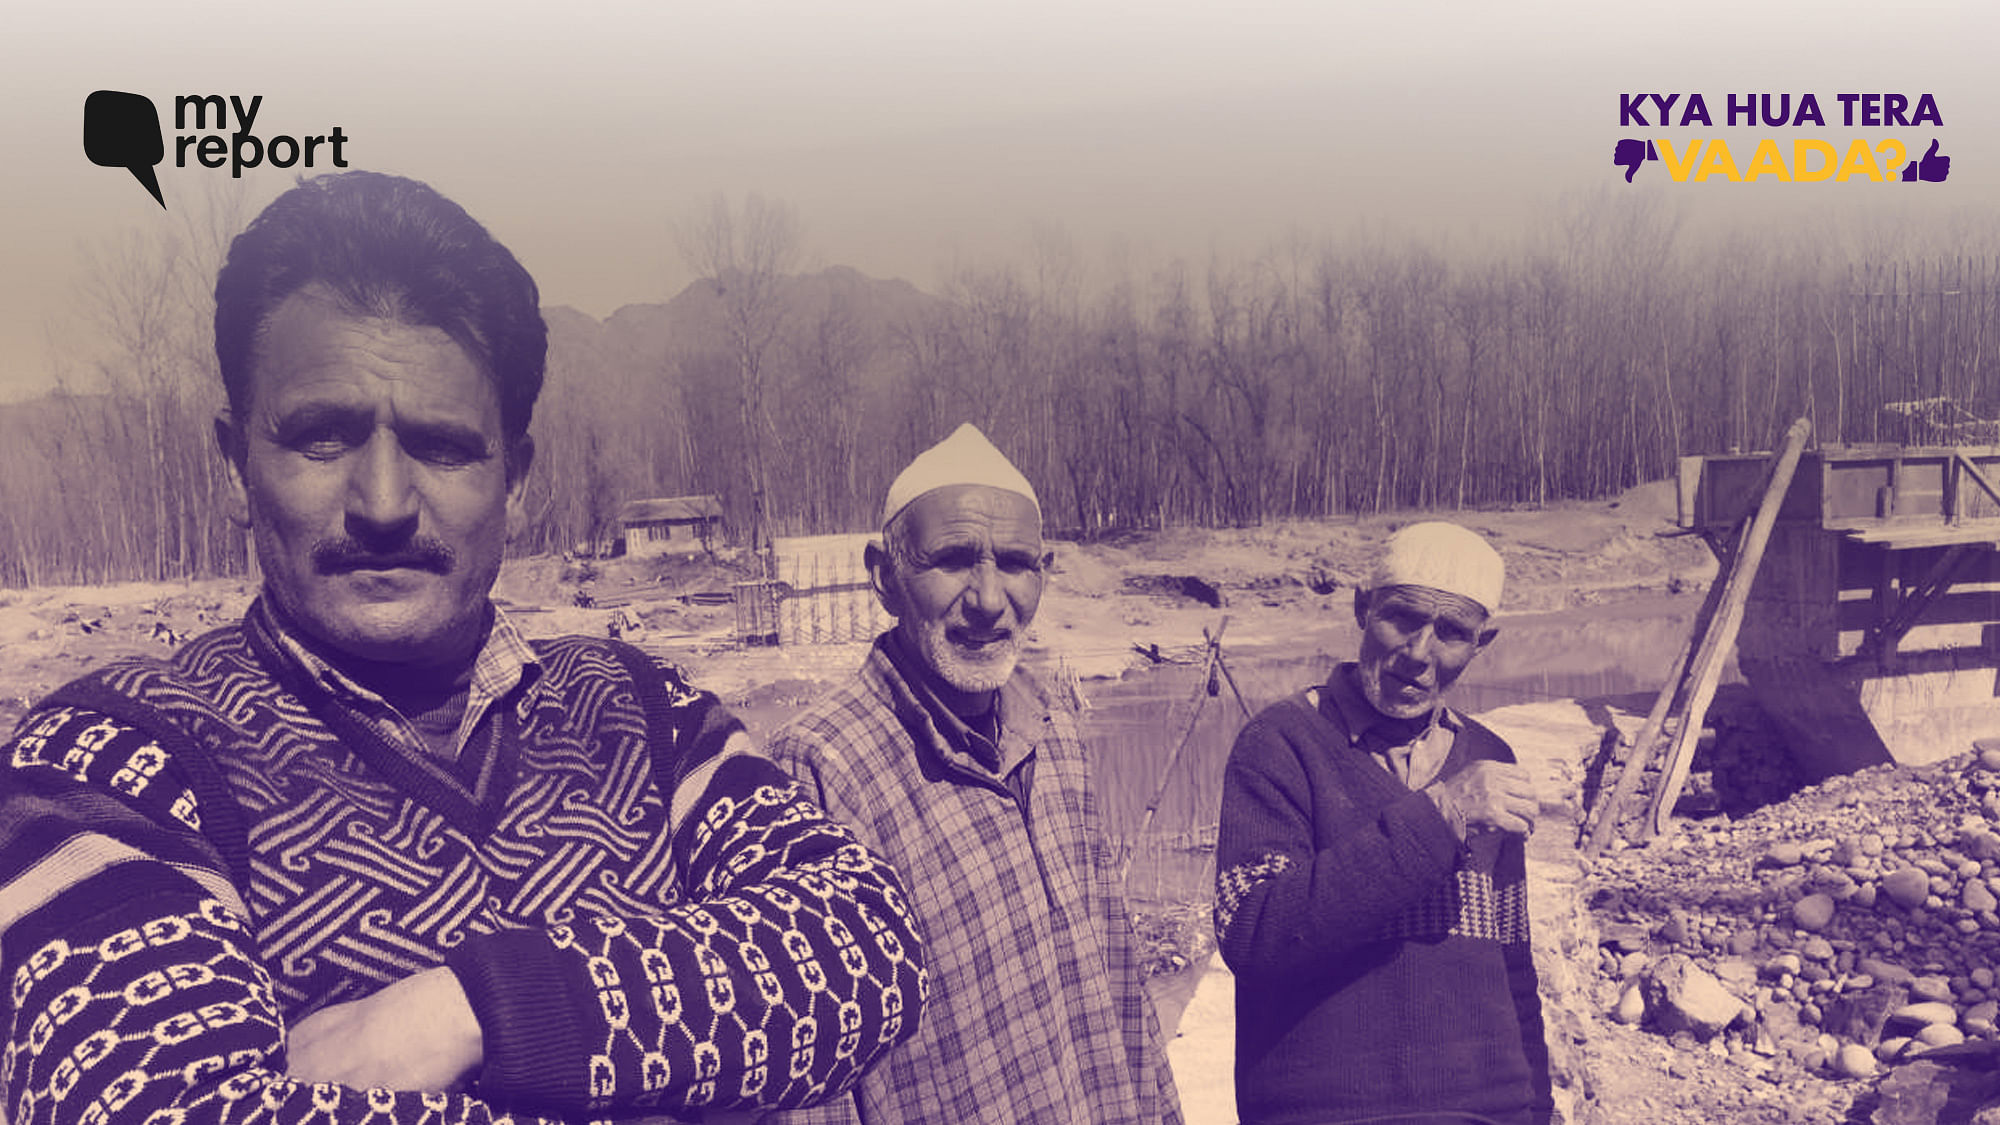 चुनावों से कुछ ही हफ्ते पहले, क्विंट ने जम्मू-कश्मीर के पुलवामा जिले के एक गांव डोगरीपोरा का दौरा किया